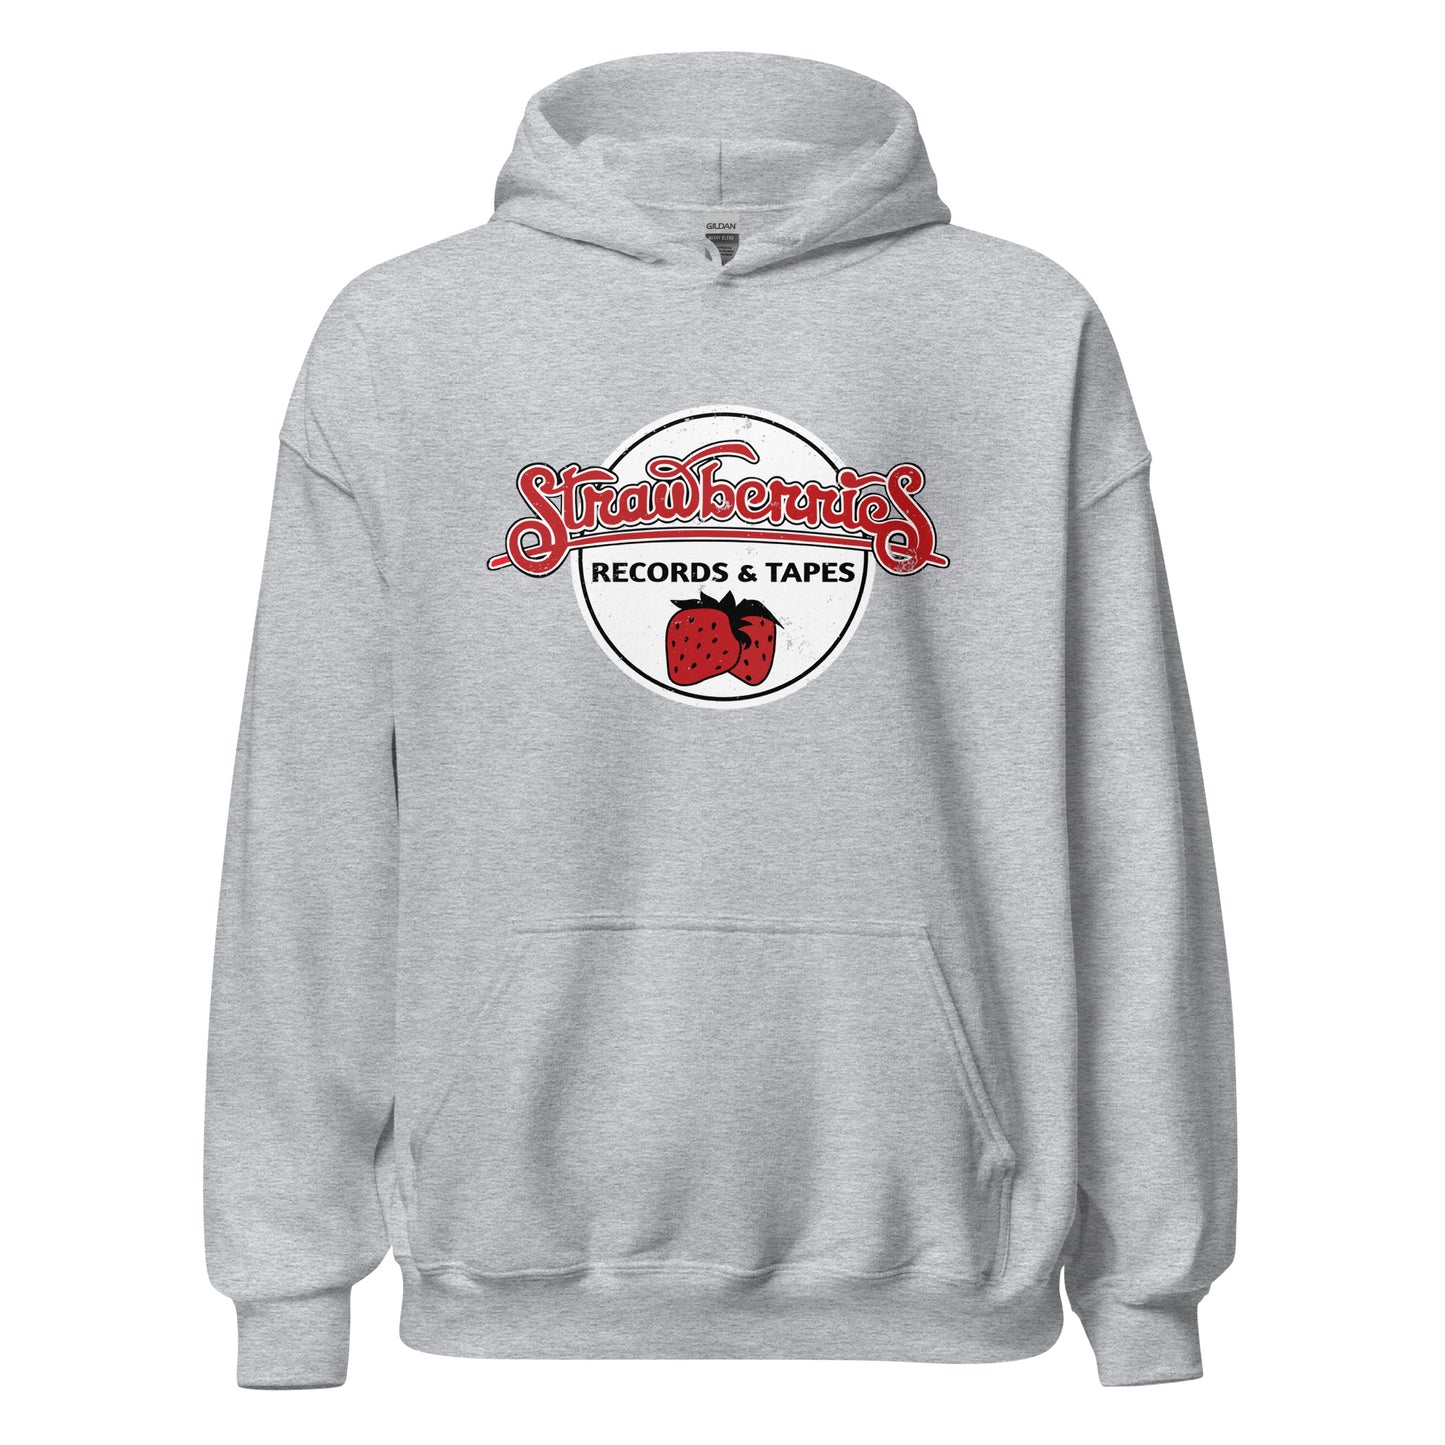 Strawberries Records Hoodie - Vintage Record Store Sweatshirt